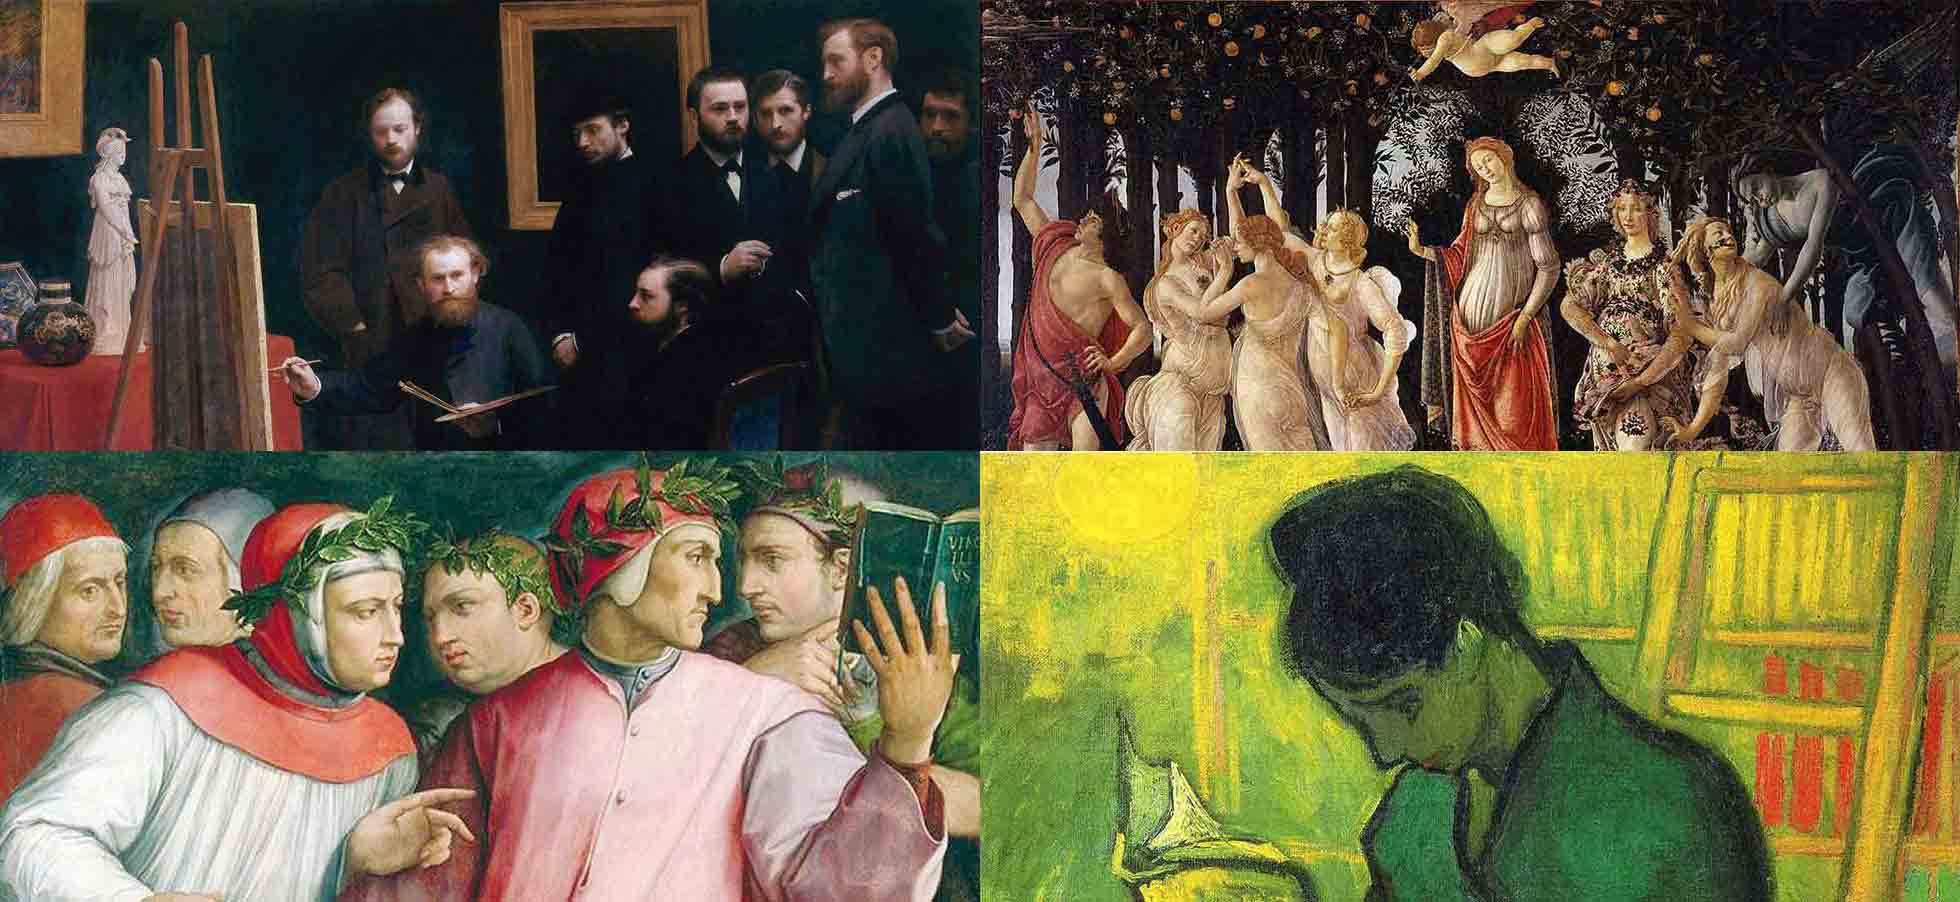 Immagine di quattro dipinti che rappresentano le arti e la letteratura